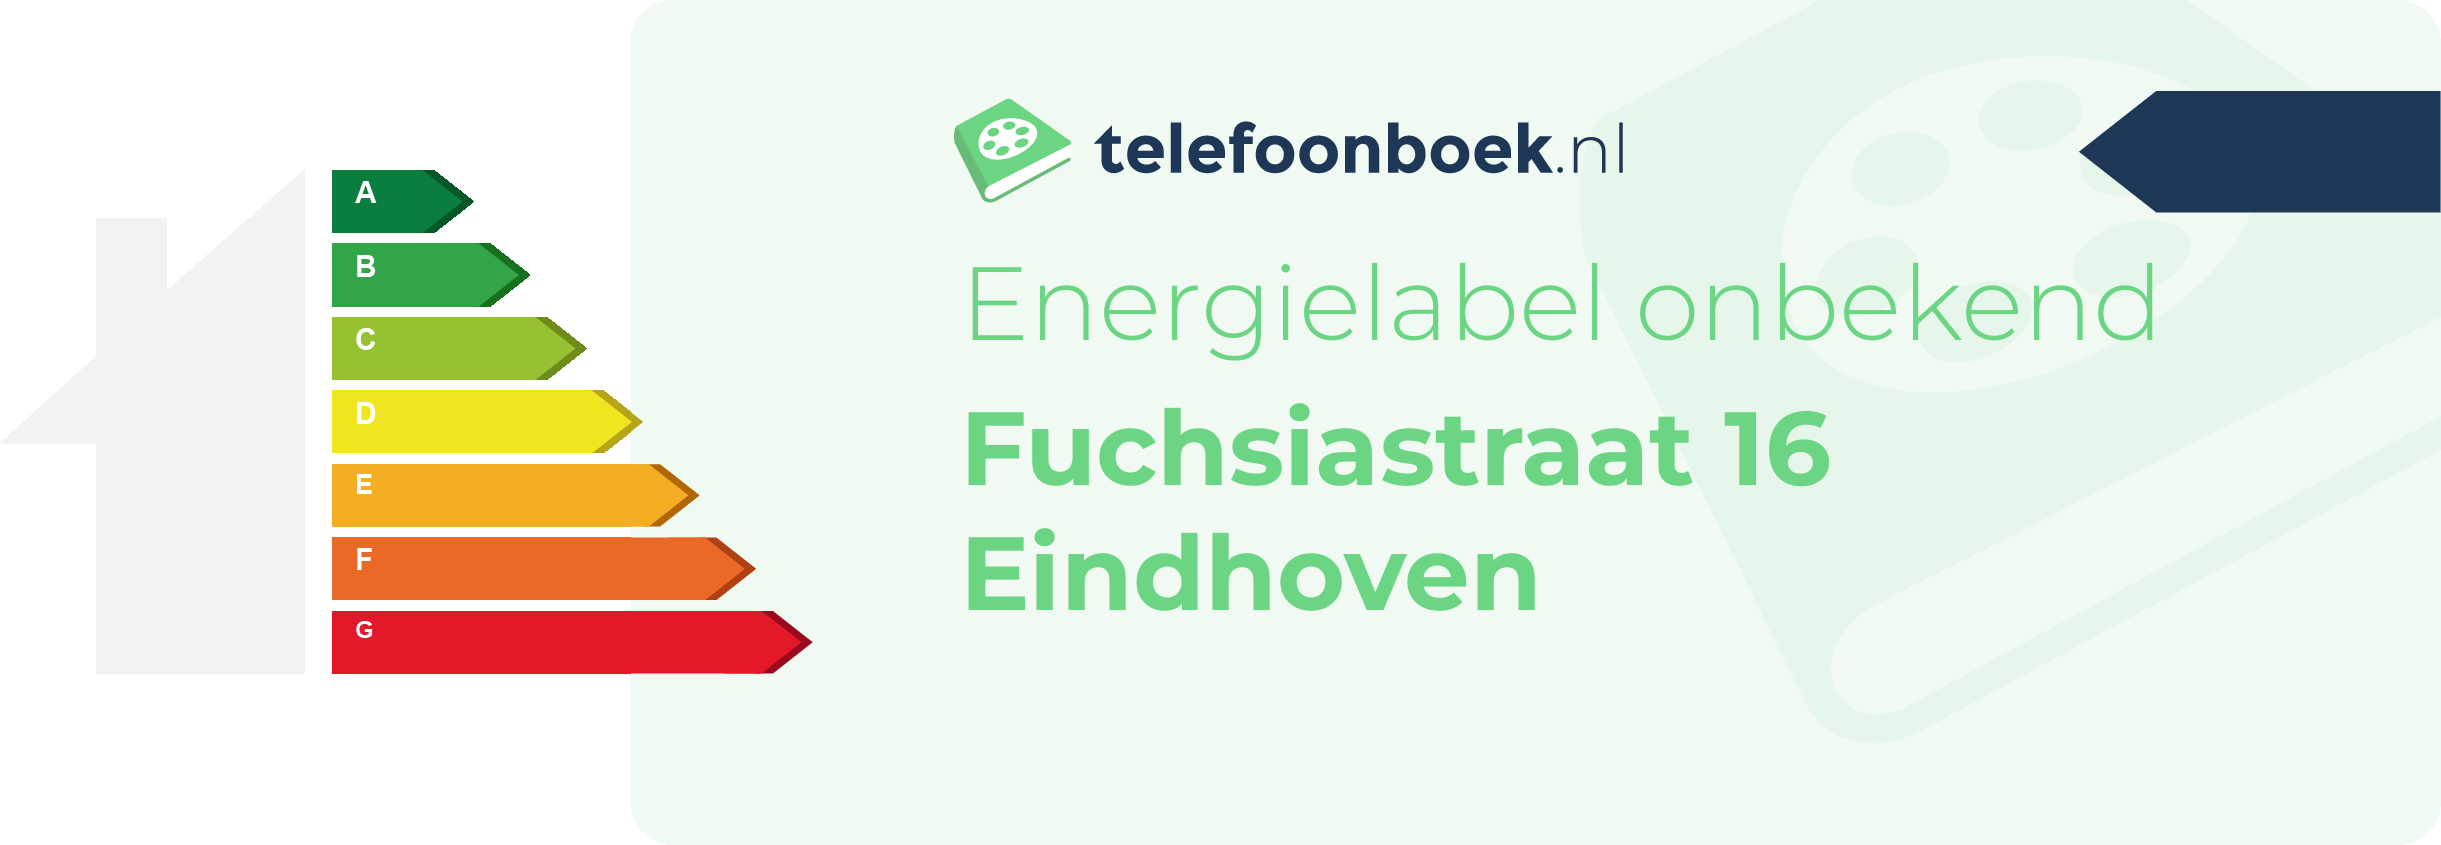 Energielabel Fuchsiastraat 16 Eindhoven